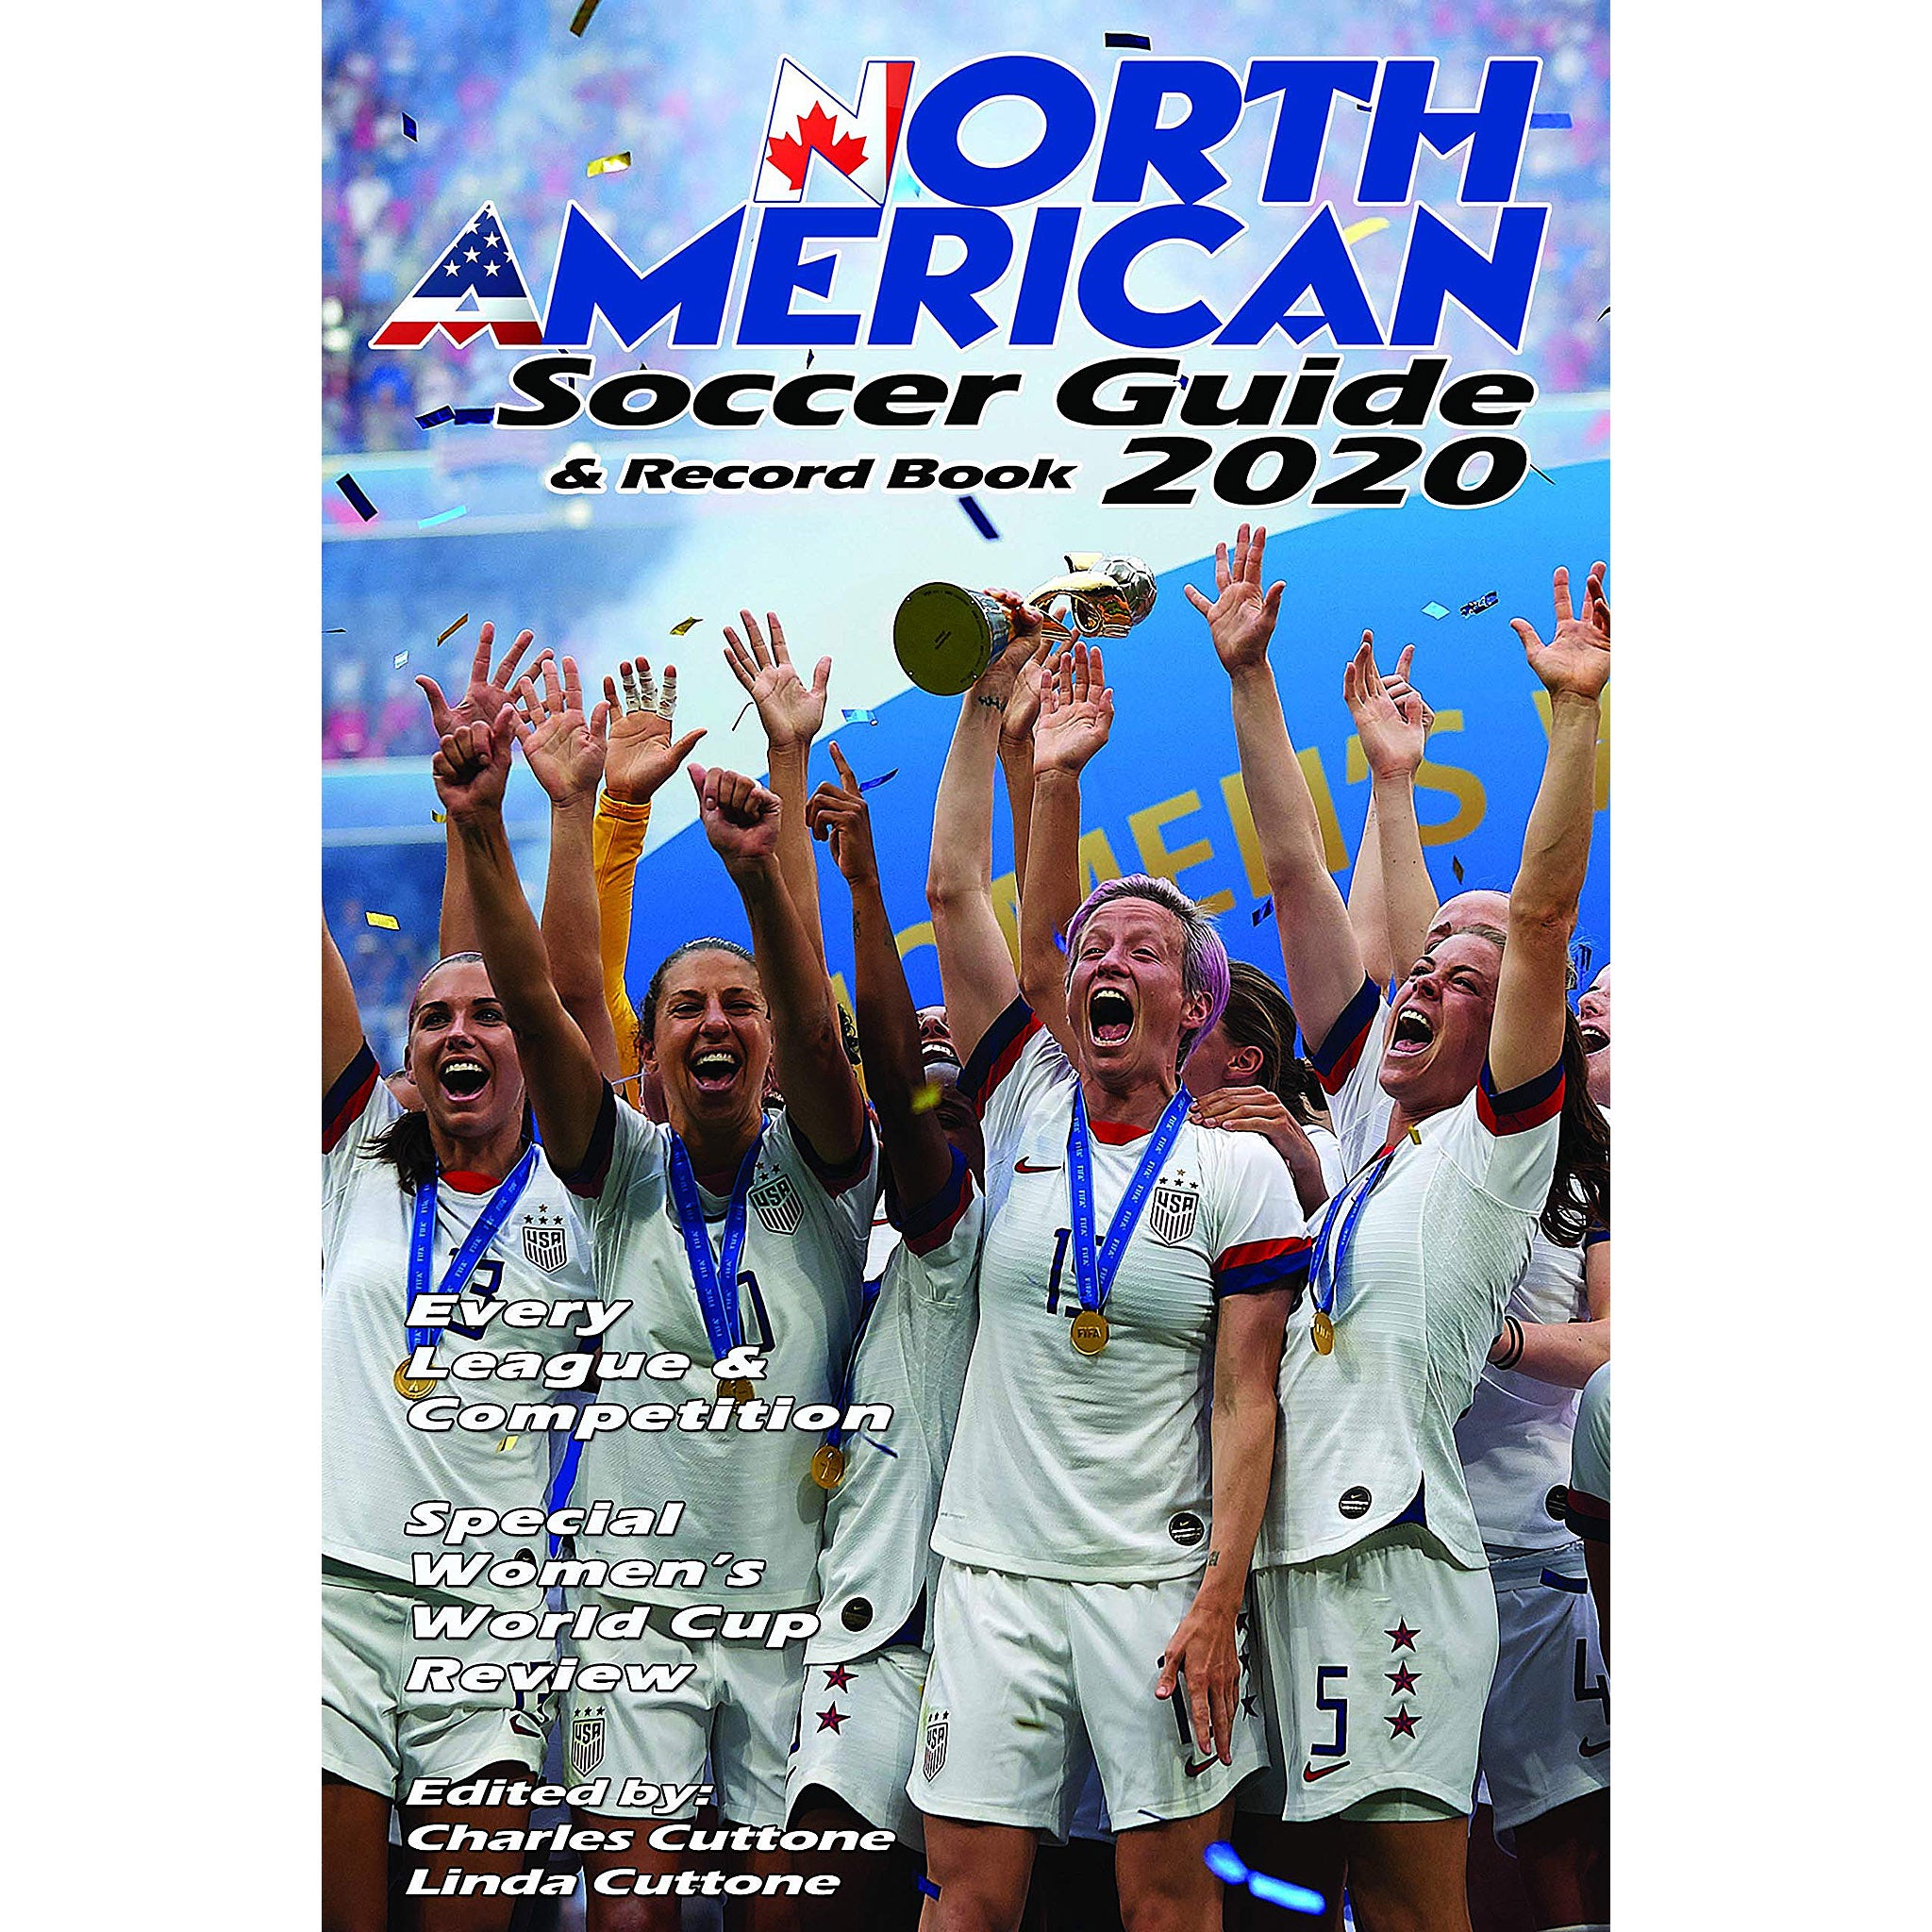 North American Soccer Guide & Record Book 2020